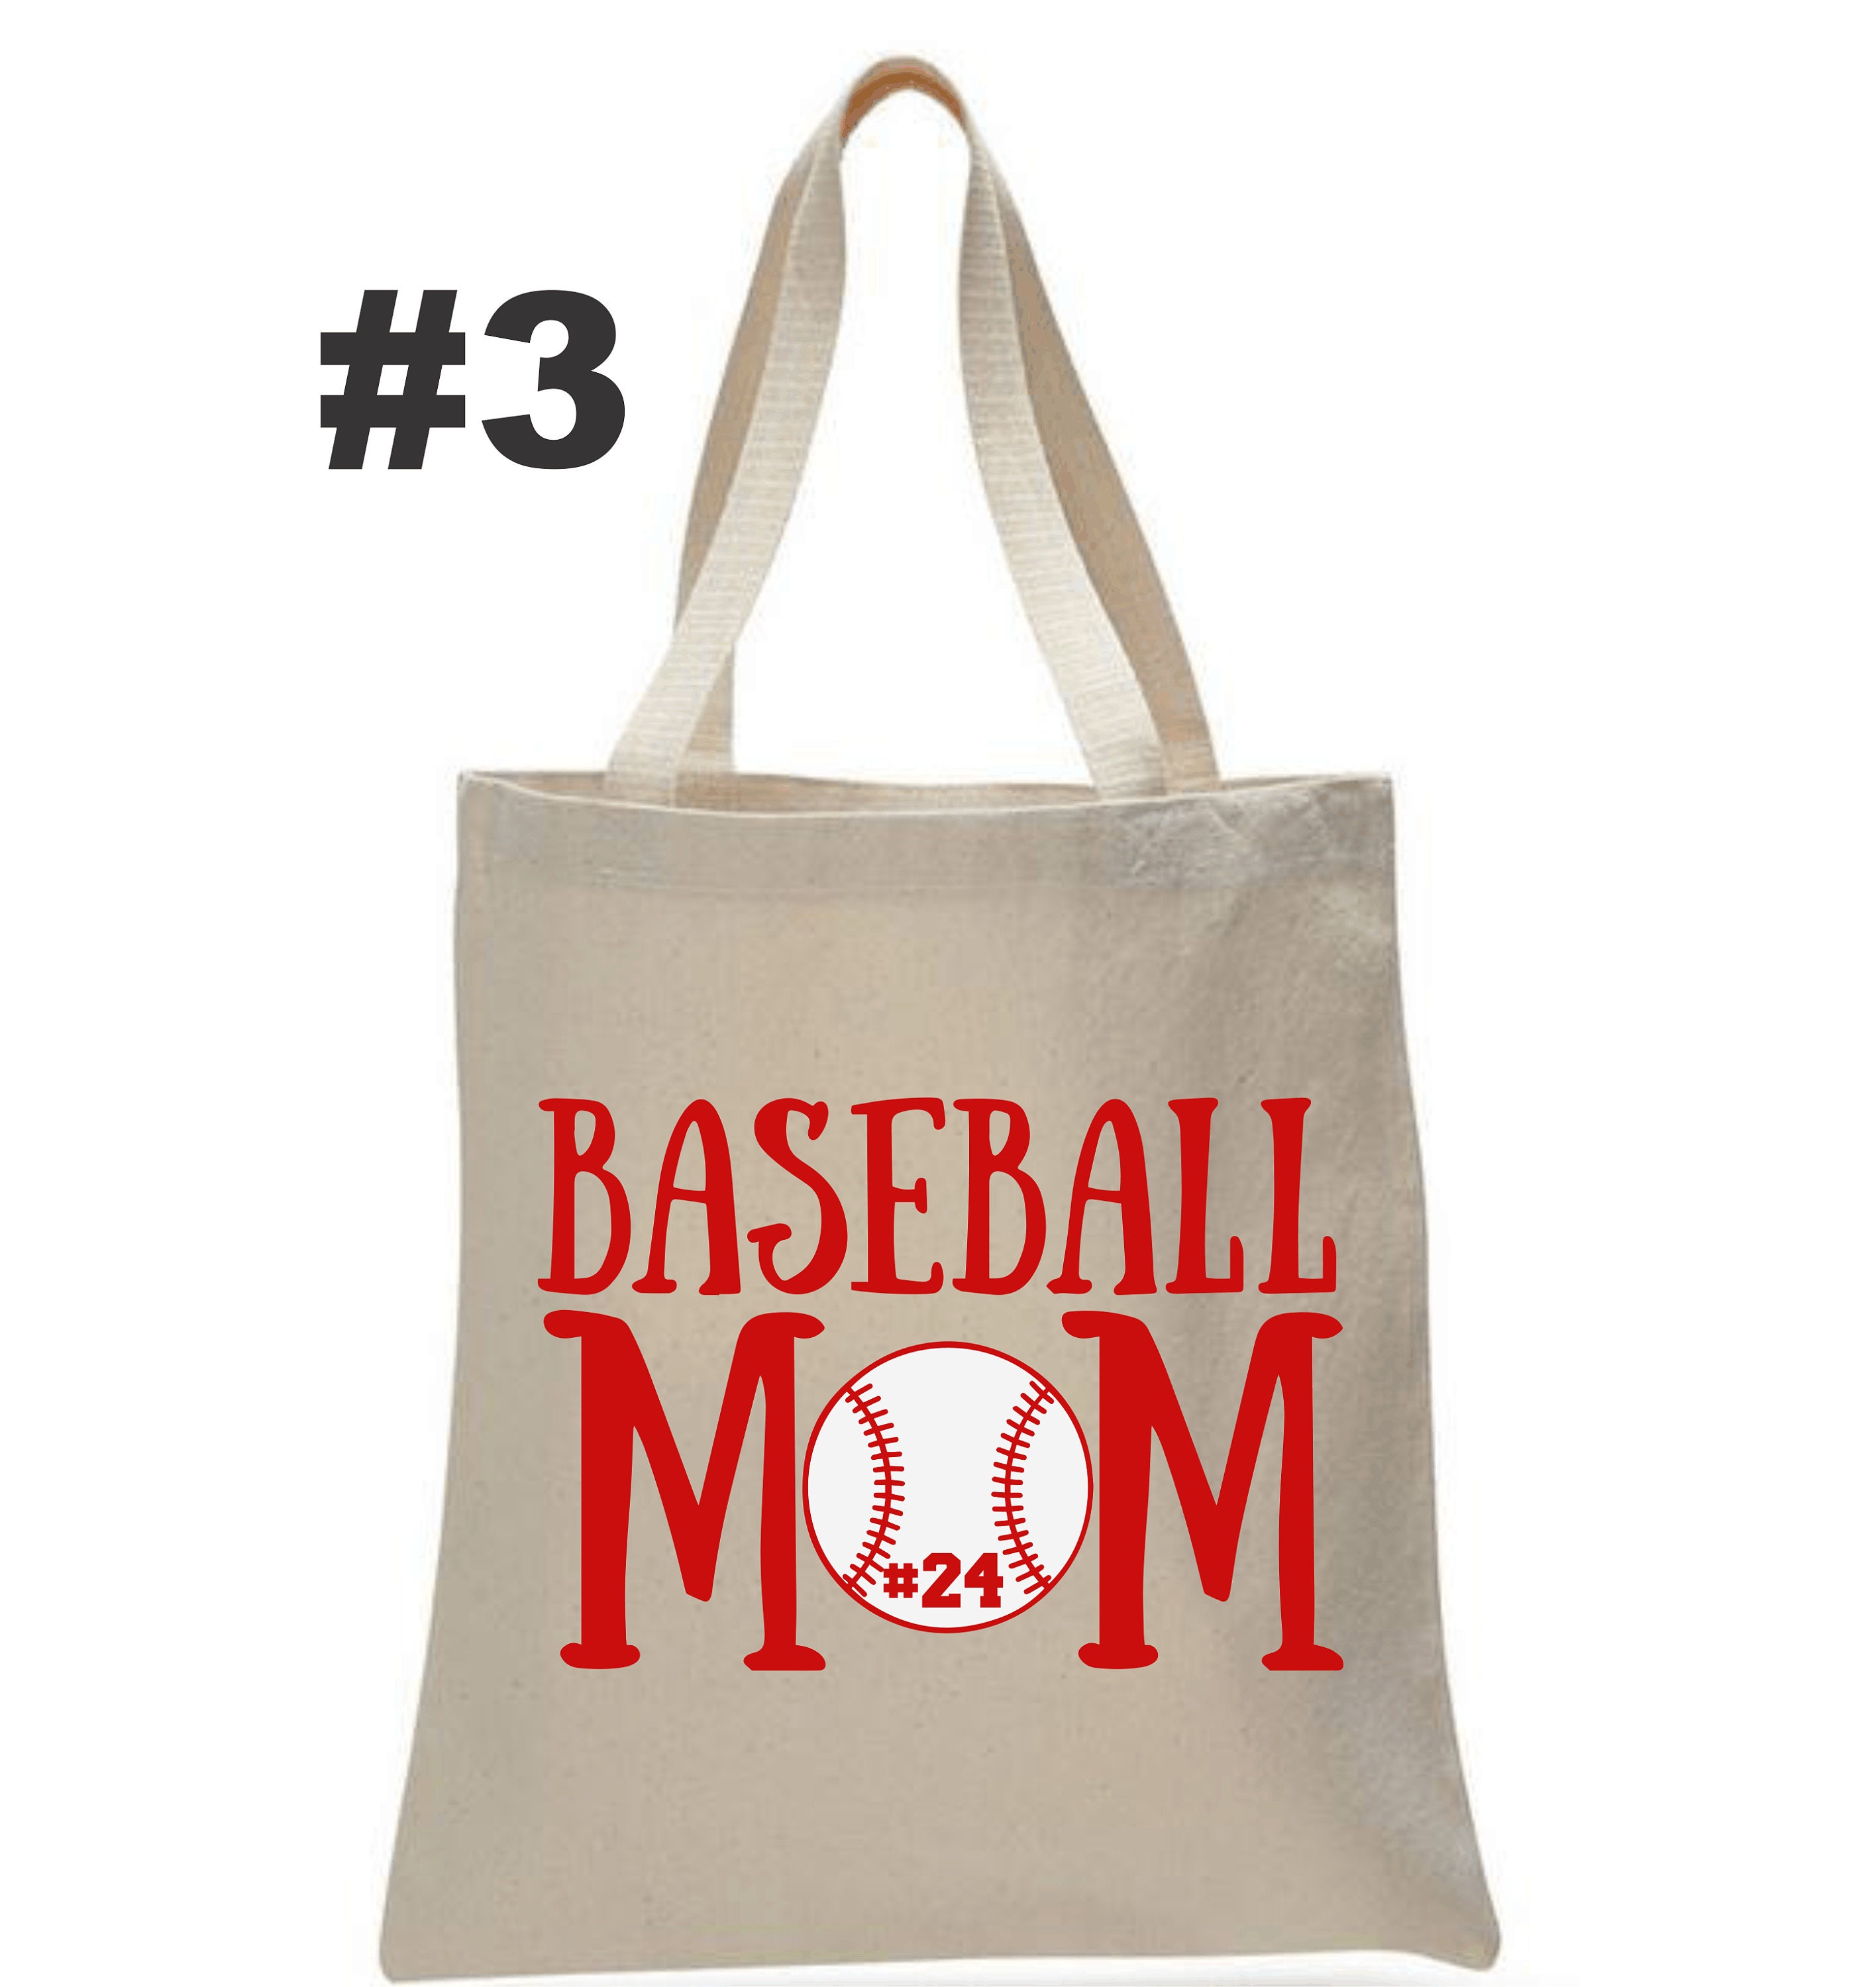 Baseball Mom Tote Bag / Softbball Mom Tote Bag / Team Mom Gift | Etsy